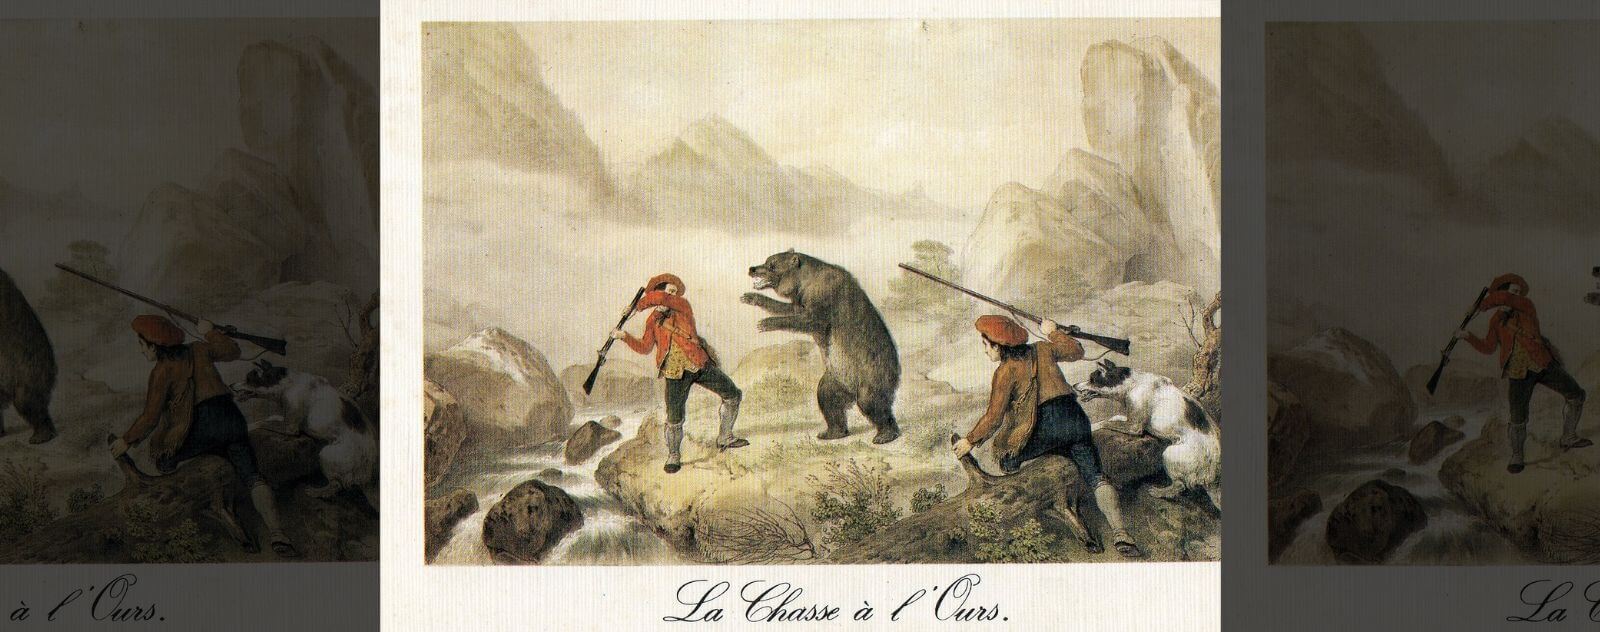 Historia de la caza del oso